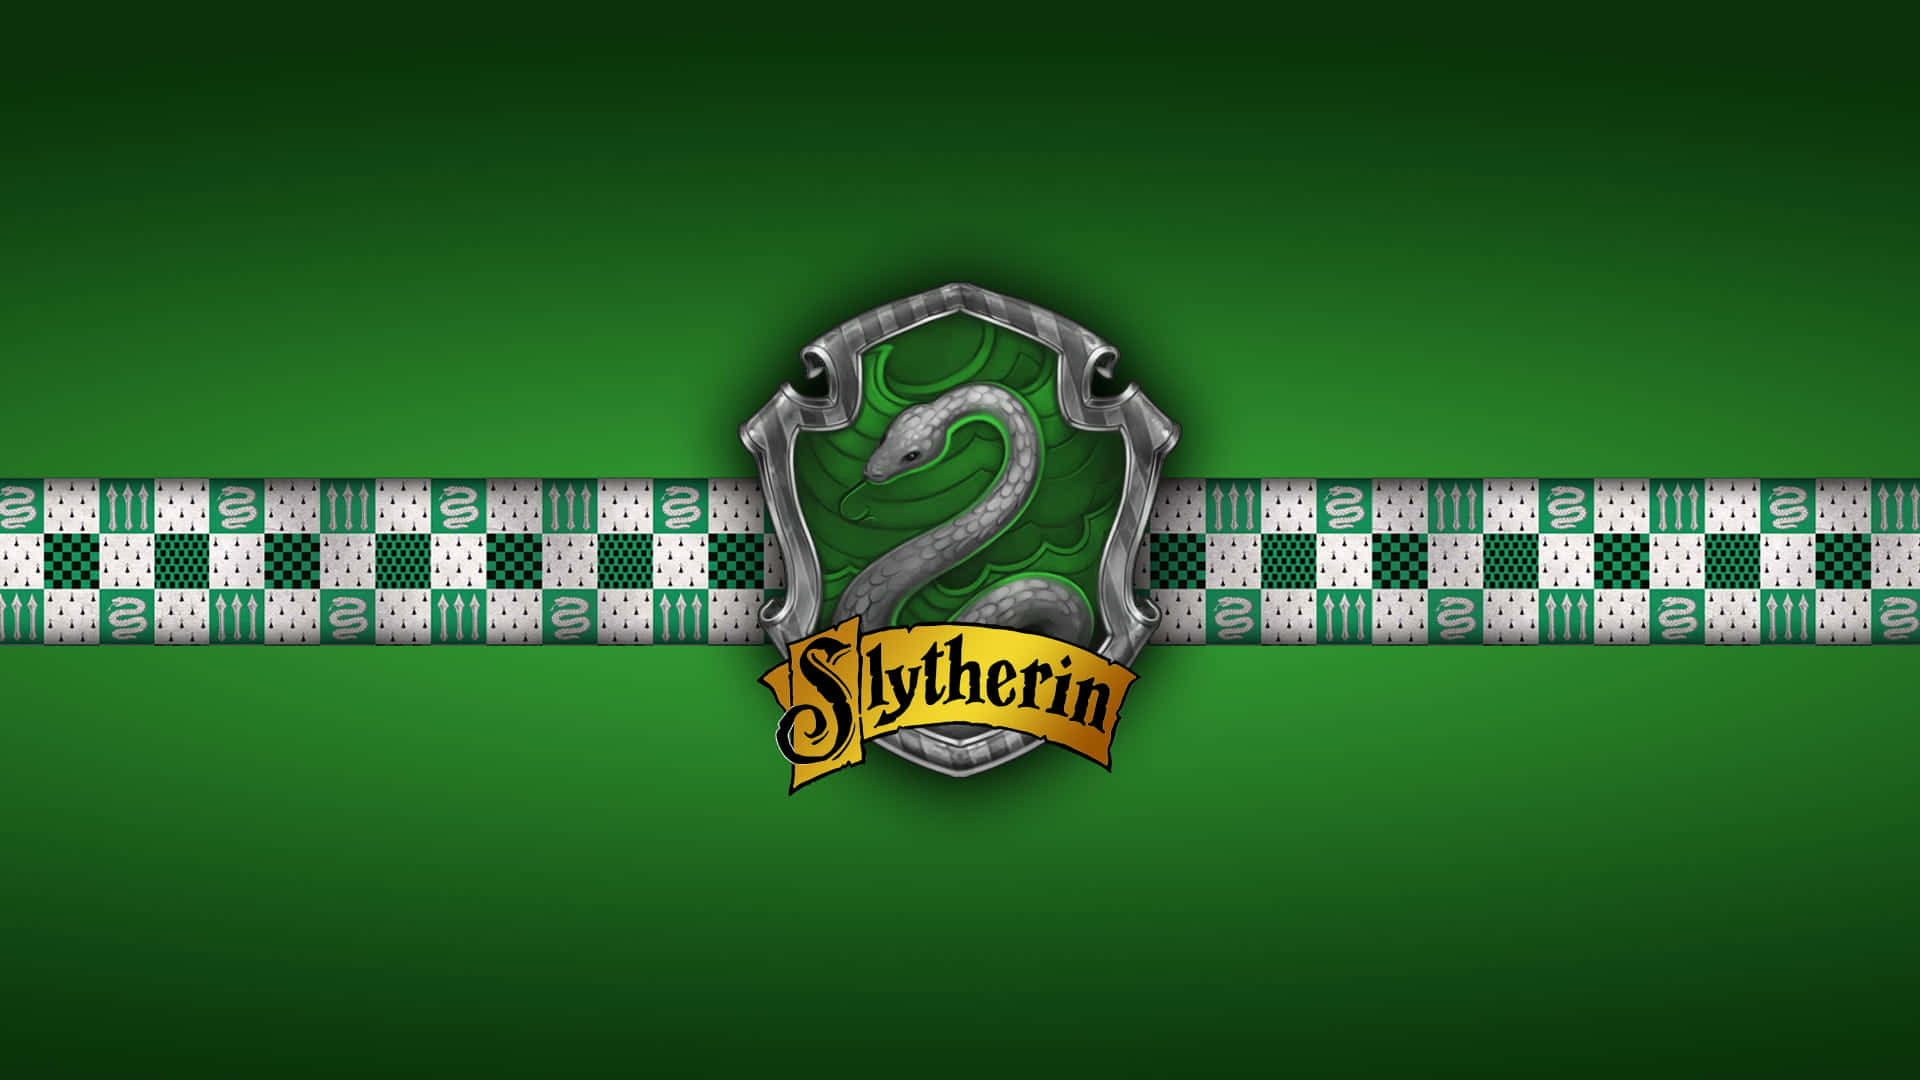 Denikoniske Grønne Og Sølv Farvekombination Fra Slytherin I Harry Potter Universet.